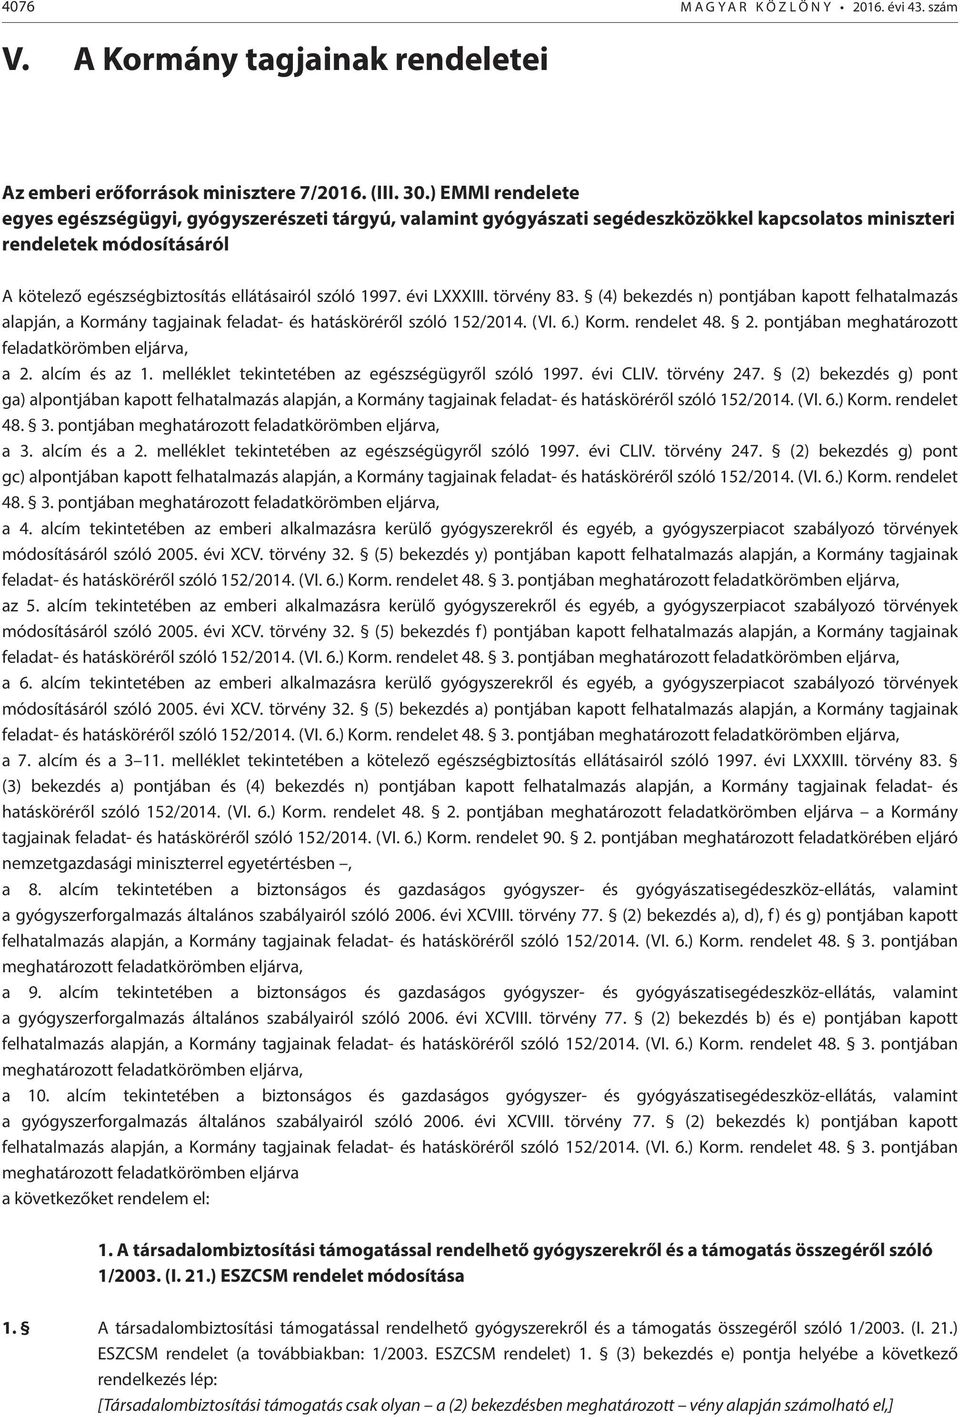 1997. évi LXXXIII. törvény 83. (4) bekezdés n) pontjában kapott felhatalmazás alapján, a Kormány tagjainak feladat- és hatásköréről szóló 152/2014. (VI. 6.) Korm. rendelet 48. 2.